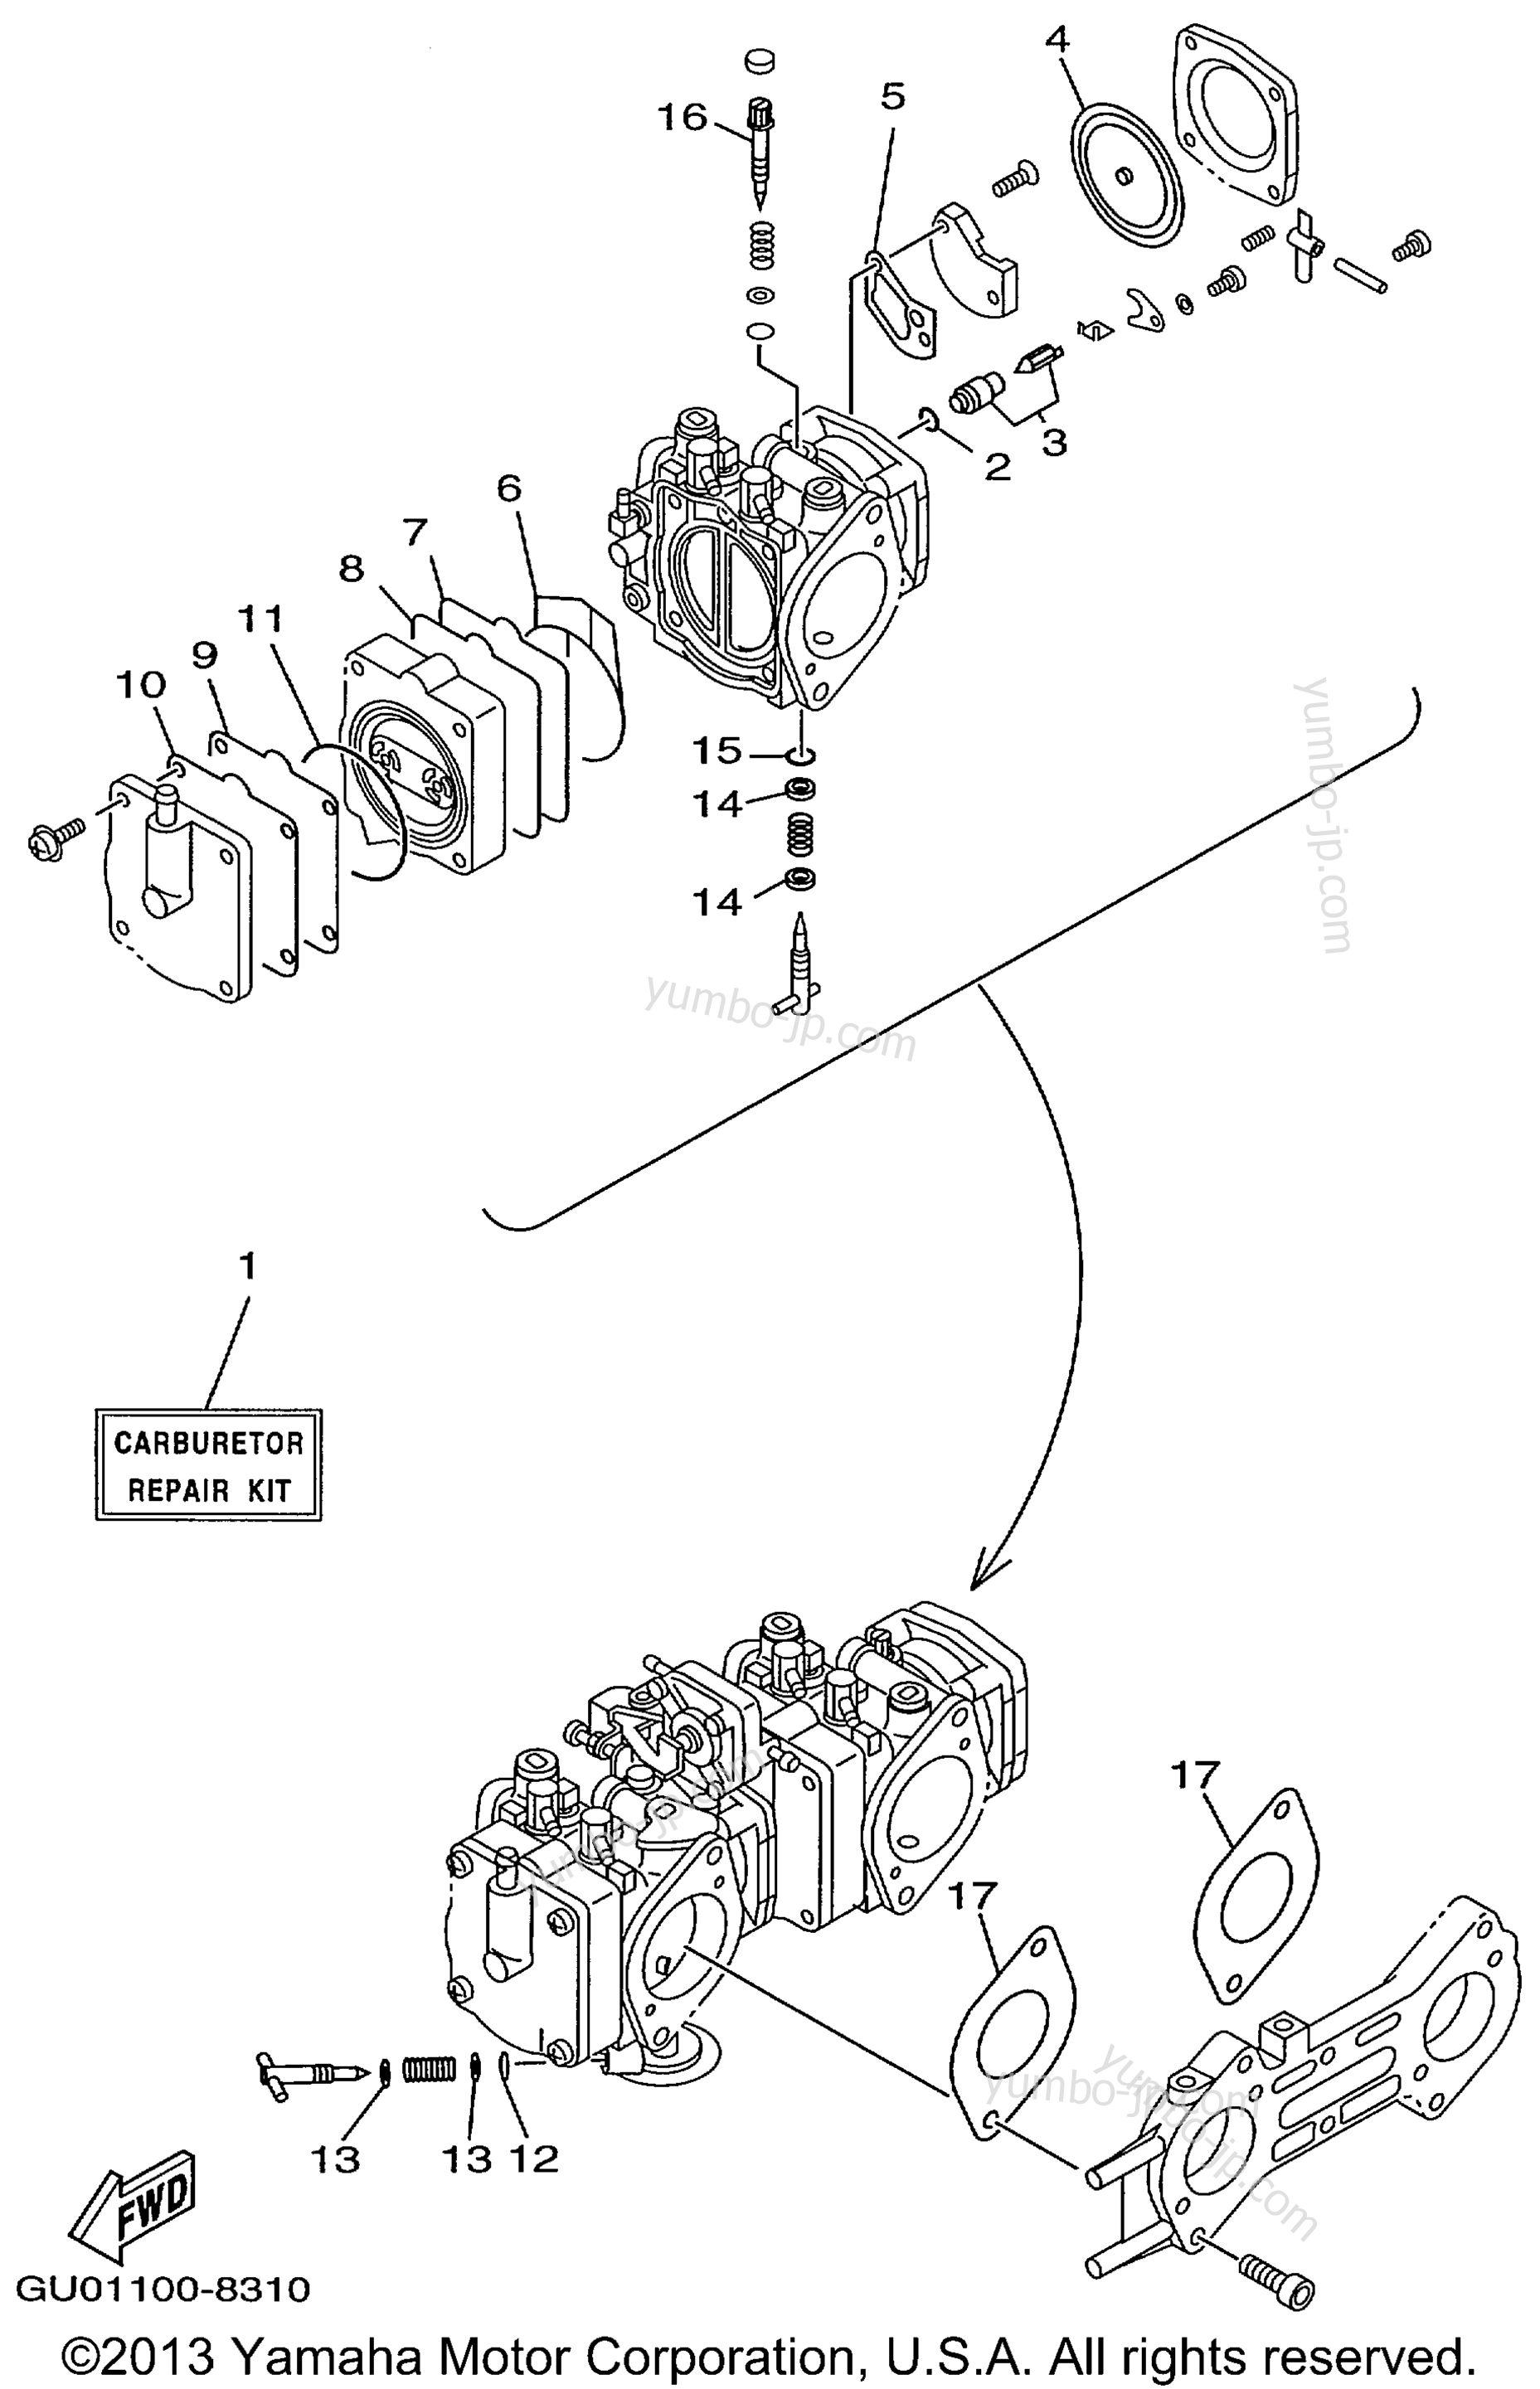 Repair Kit 2 для гидроциклов YAMAHA WAVE RUNNER GP800W (GP800W) 1998 г.